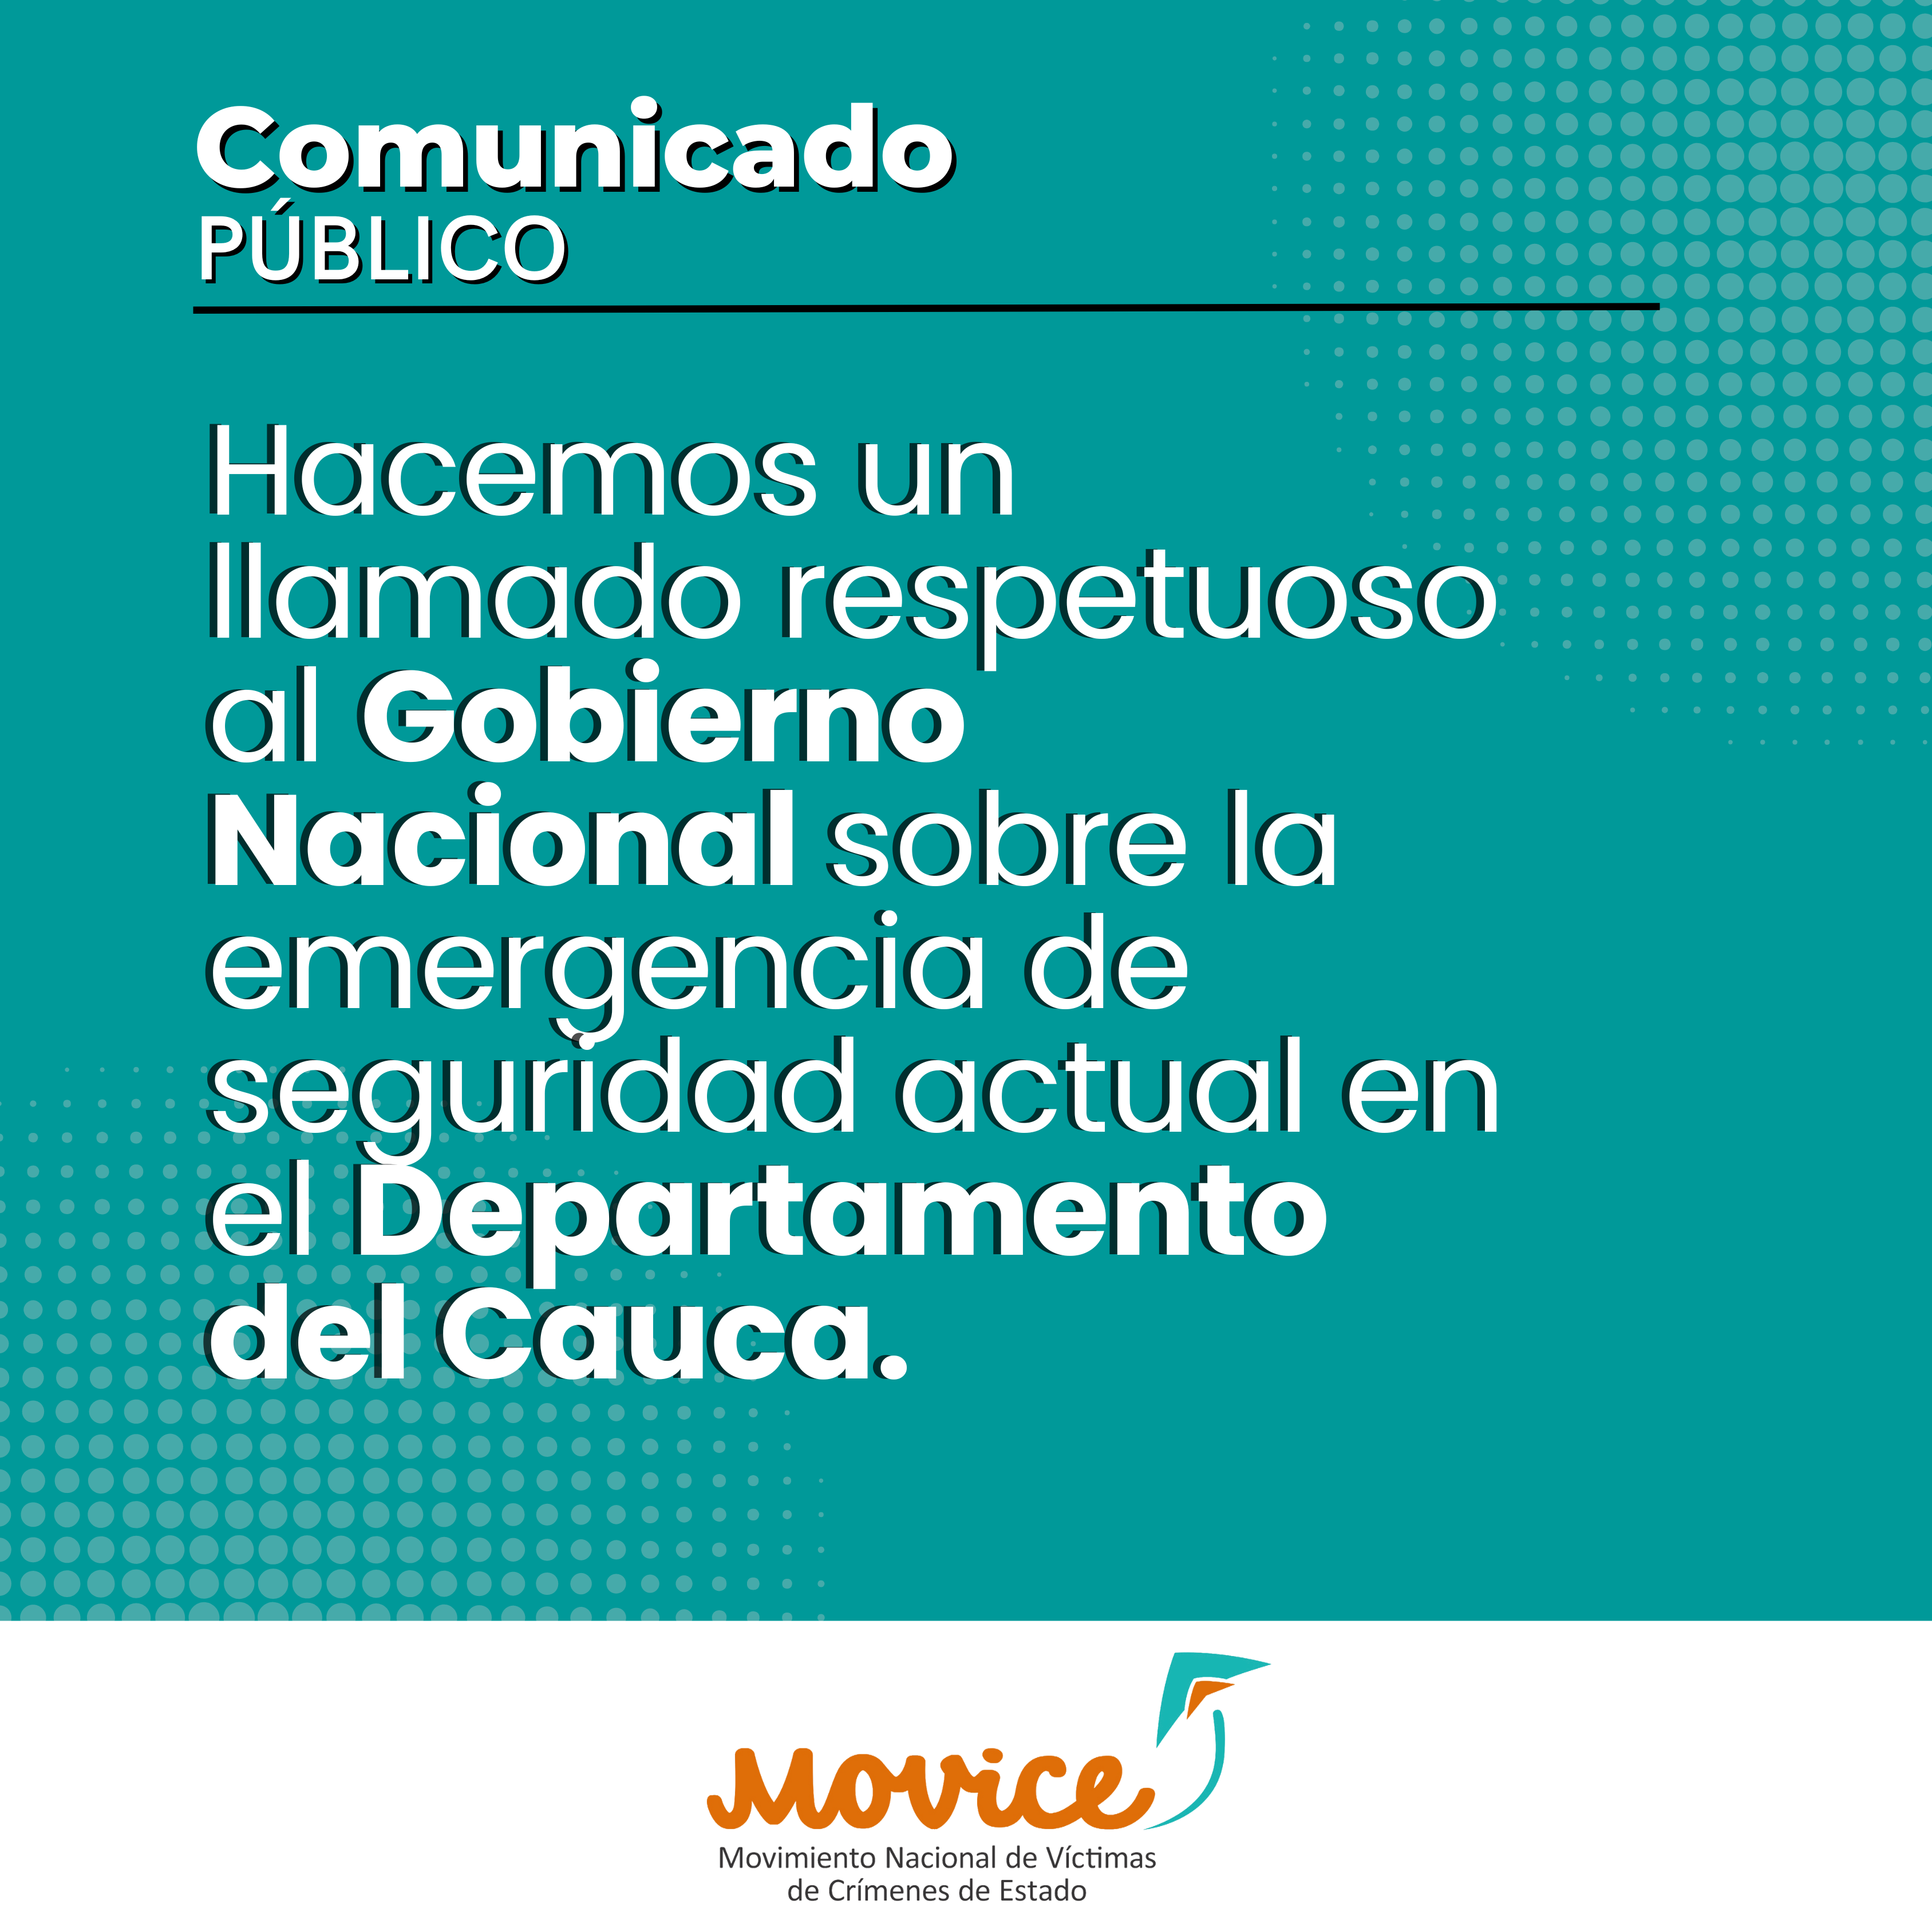 Hacemos un llamado respetuoso al Gobierno Nacional sobre la emergencia de seguridad actual en el Departamento del Cauca.